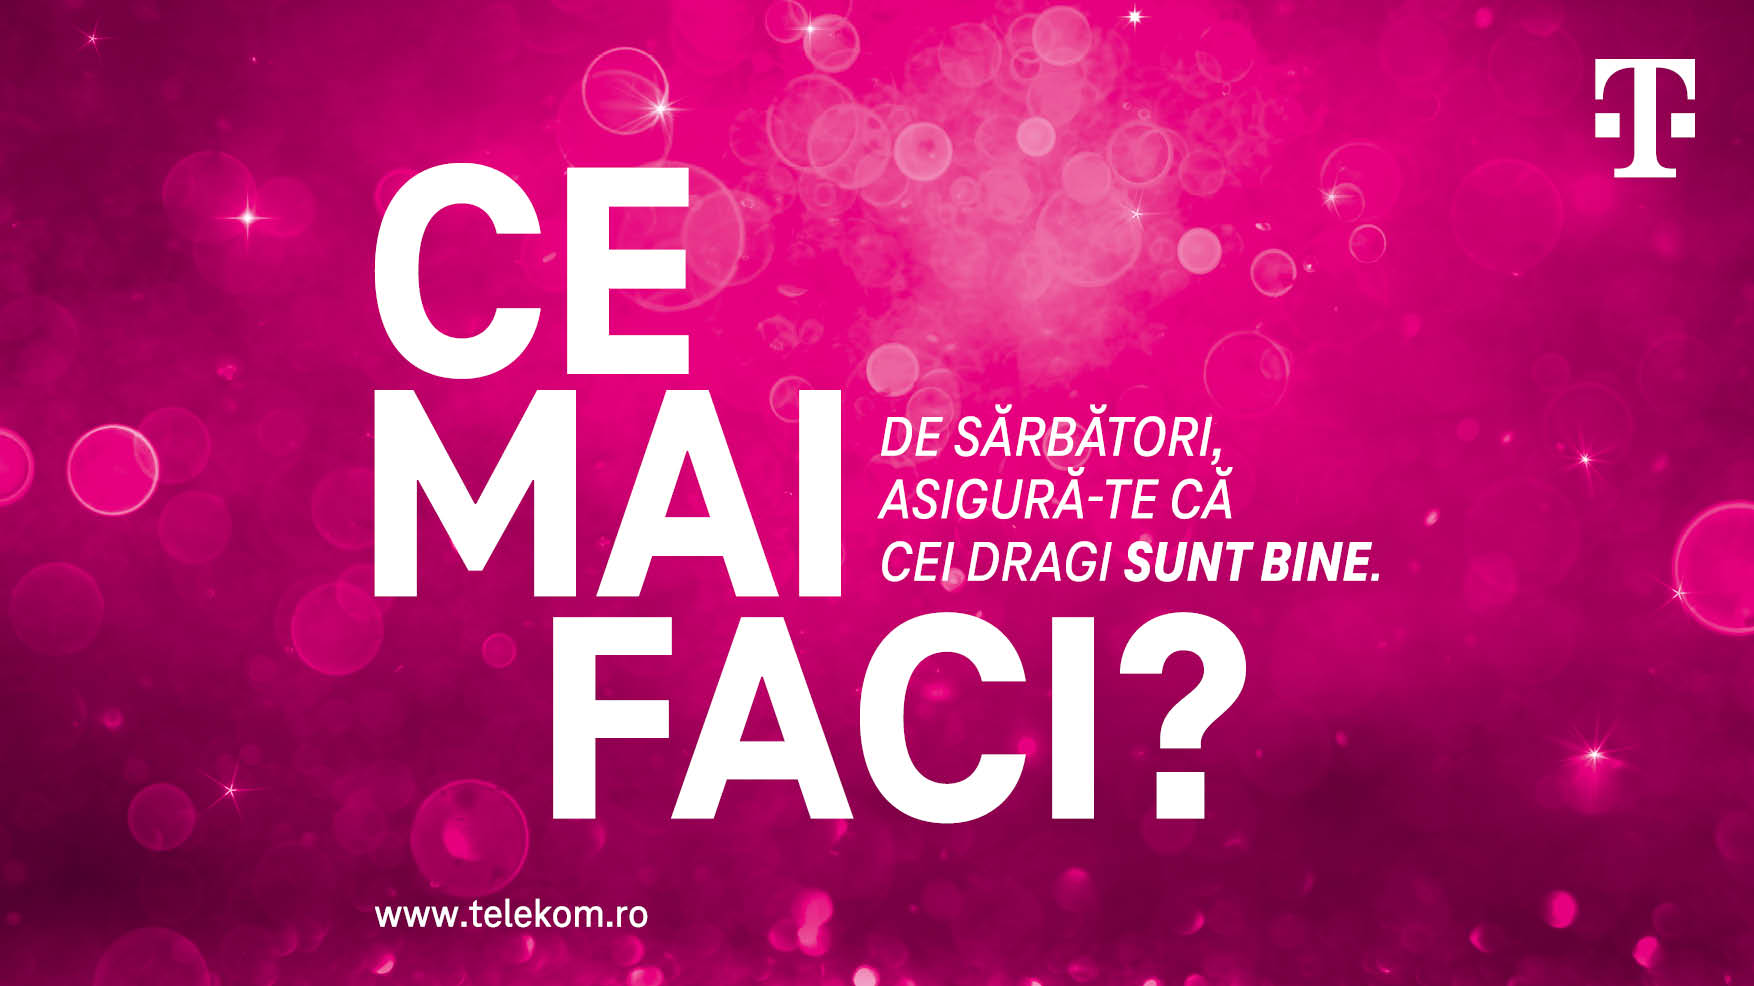 Telekom Mobile lansează campania ”Ce mai faci?”